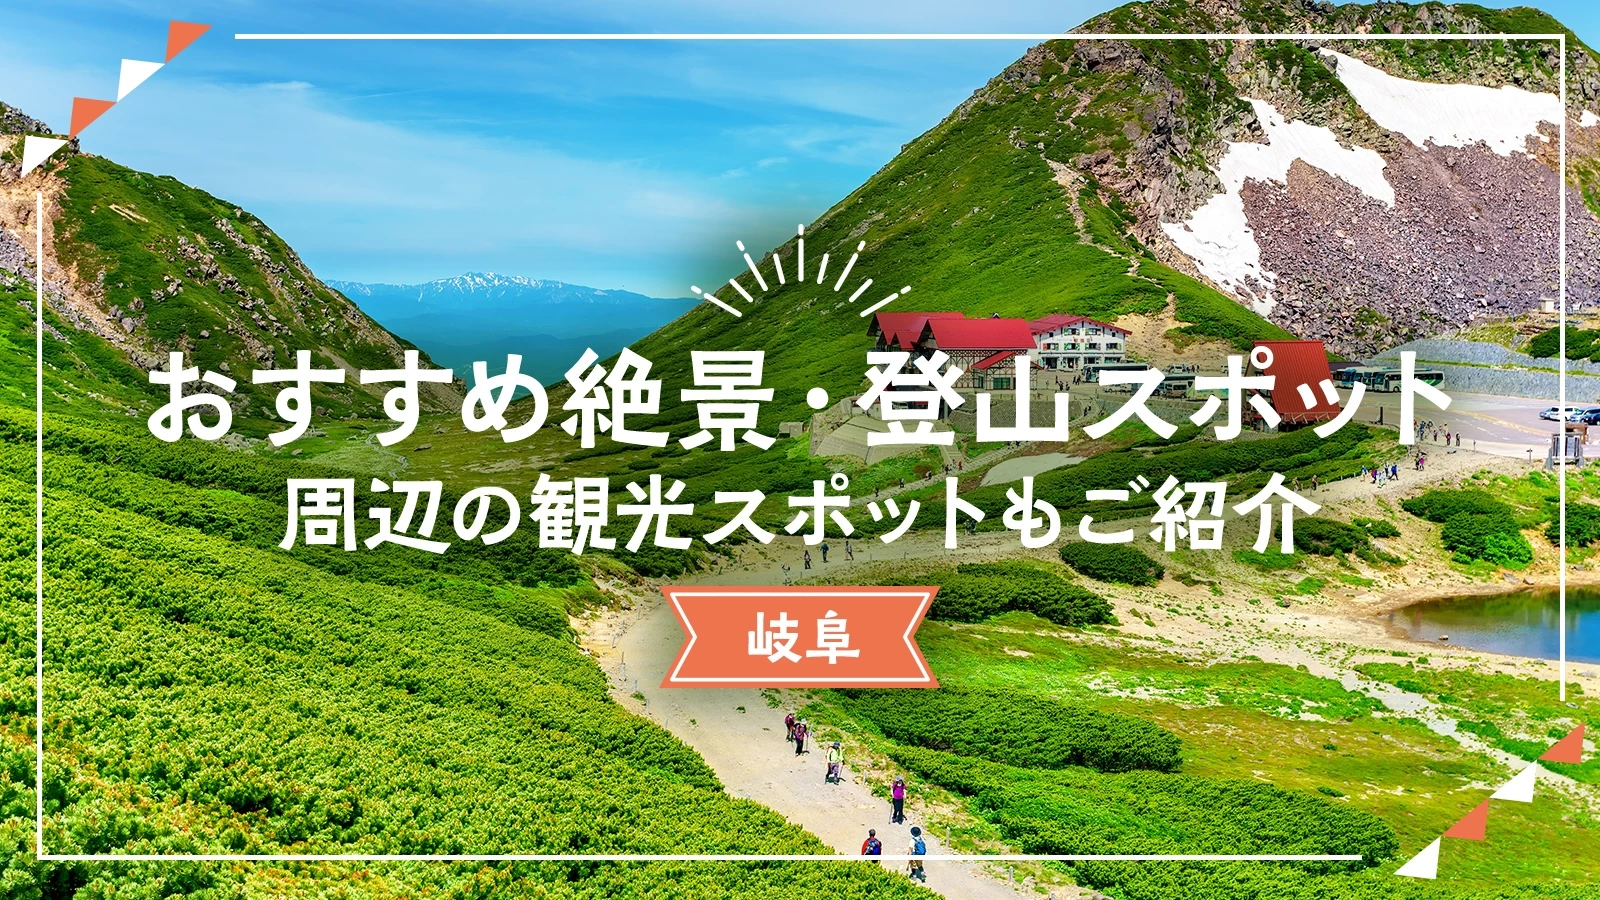 【岐阜】おすすめ絶景・登山スポット11選 周辺の観光スポットもご紹介